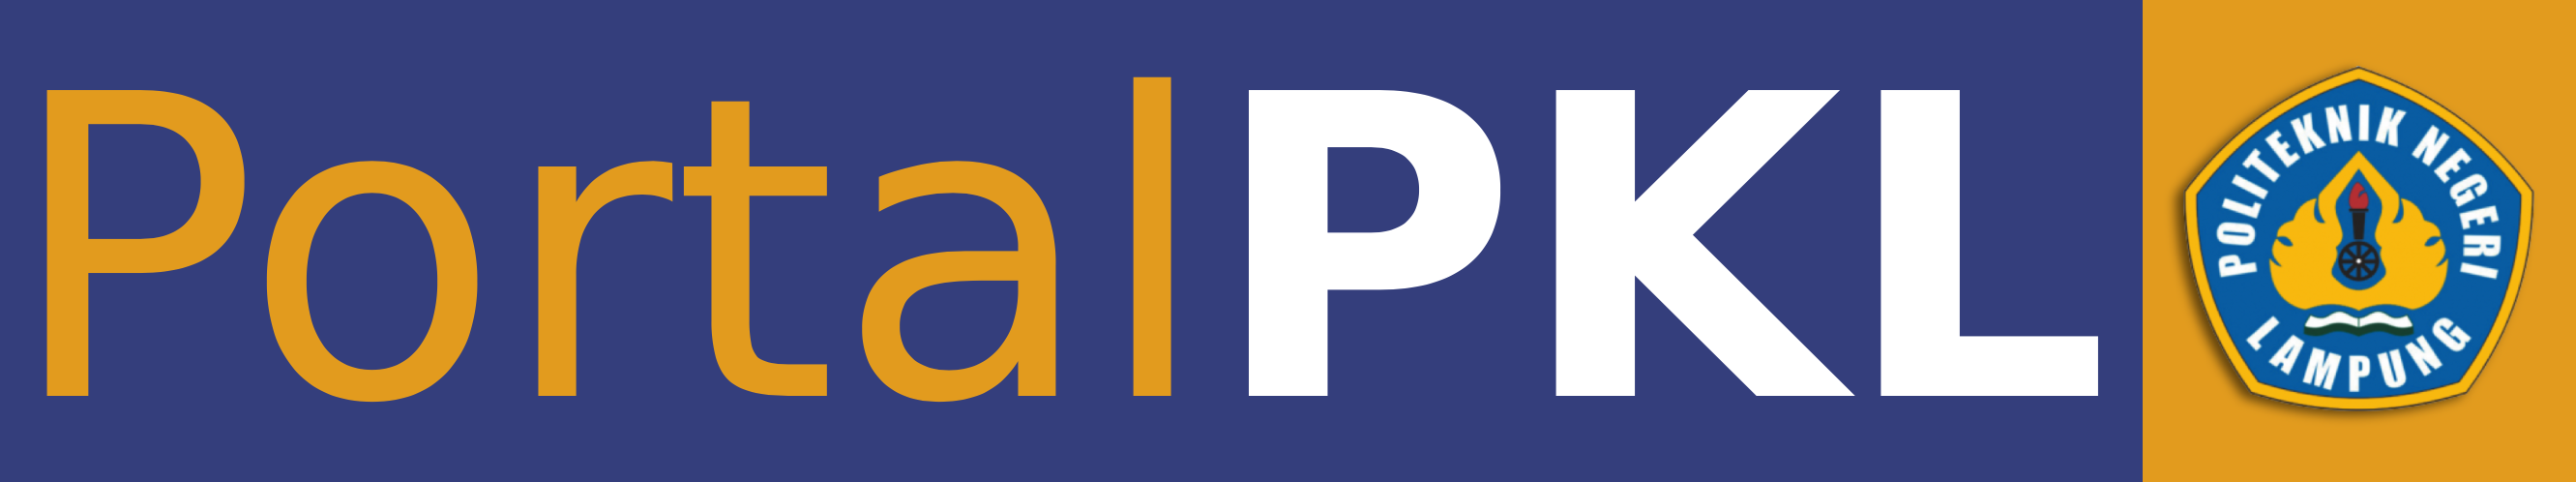 pkn-logo